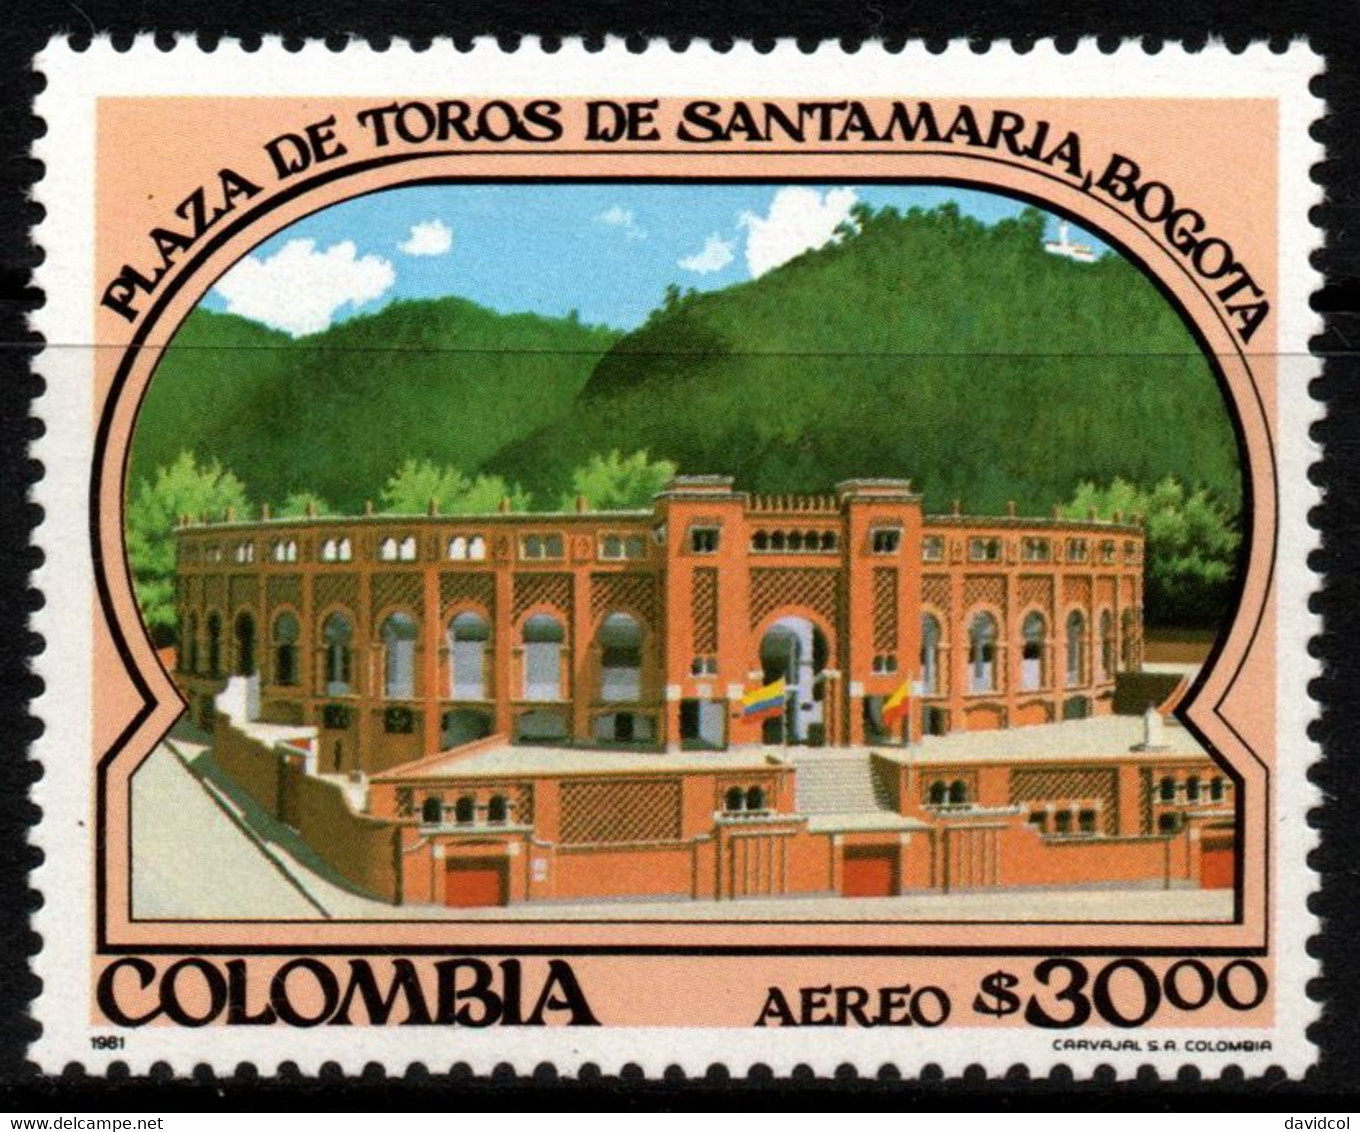 05- KOLUMBIEN - 1981- MI#:1474- MNH- BULLRING “LA SANTA MARIA” OF BOGOTA- - Colombie